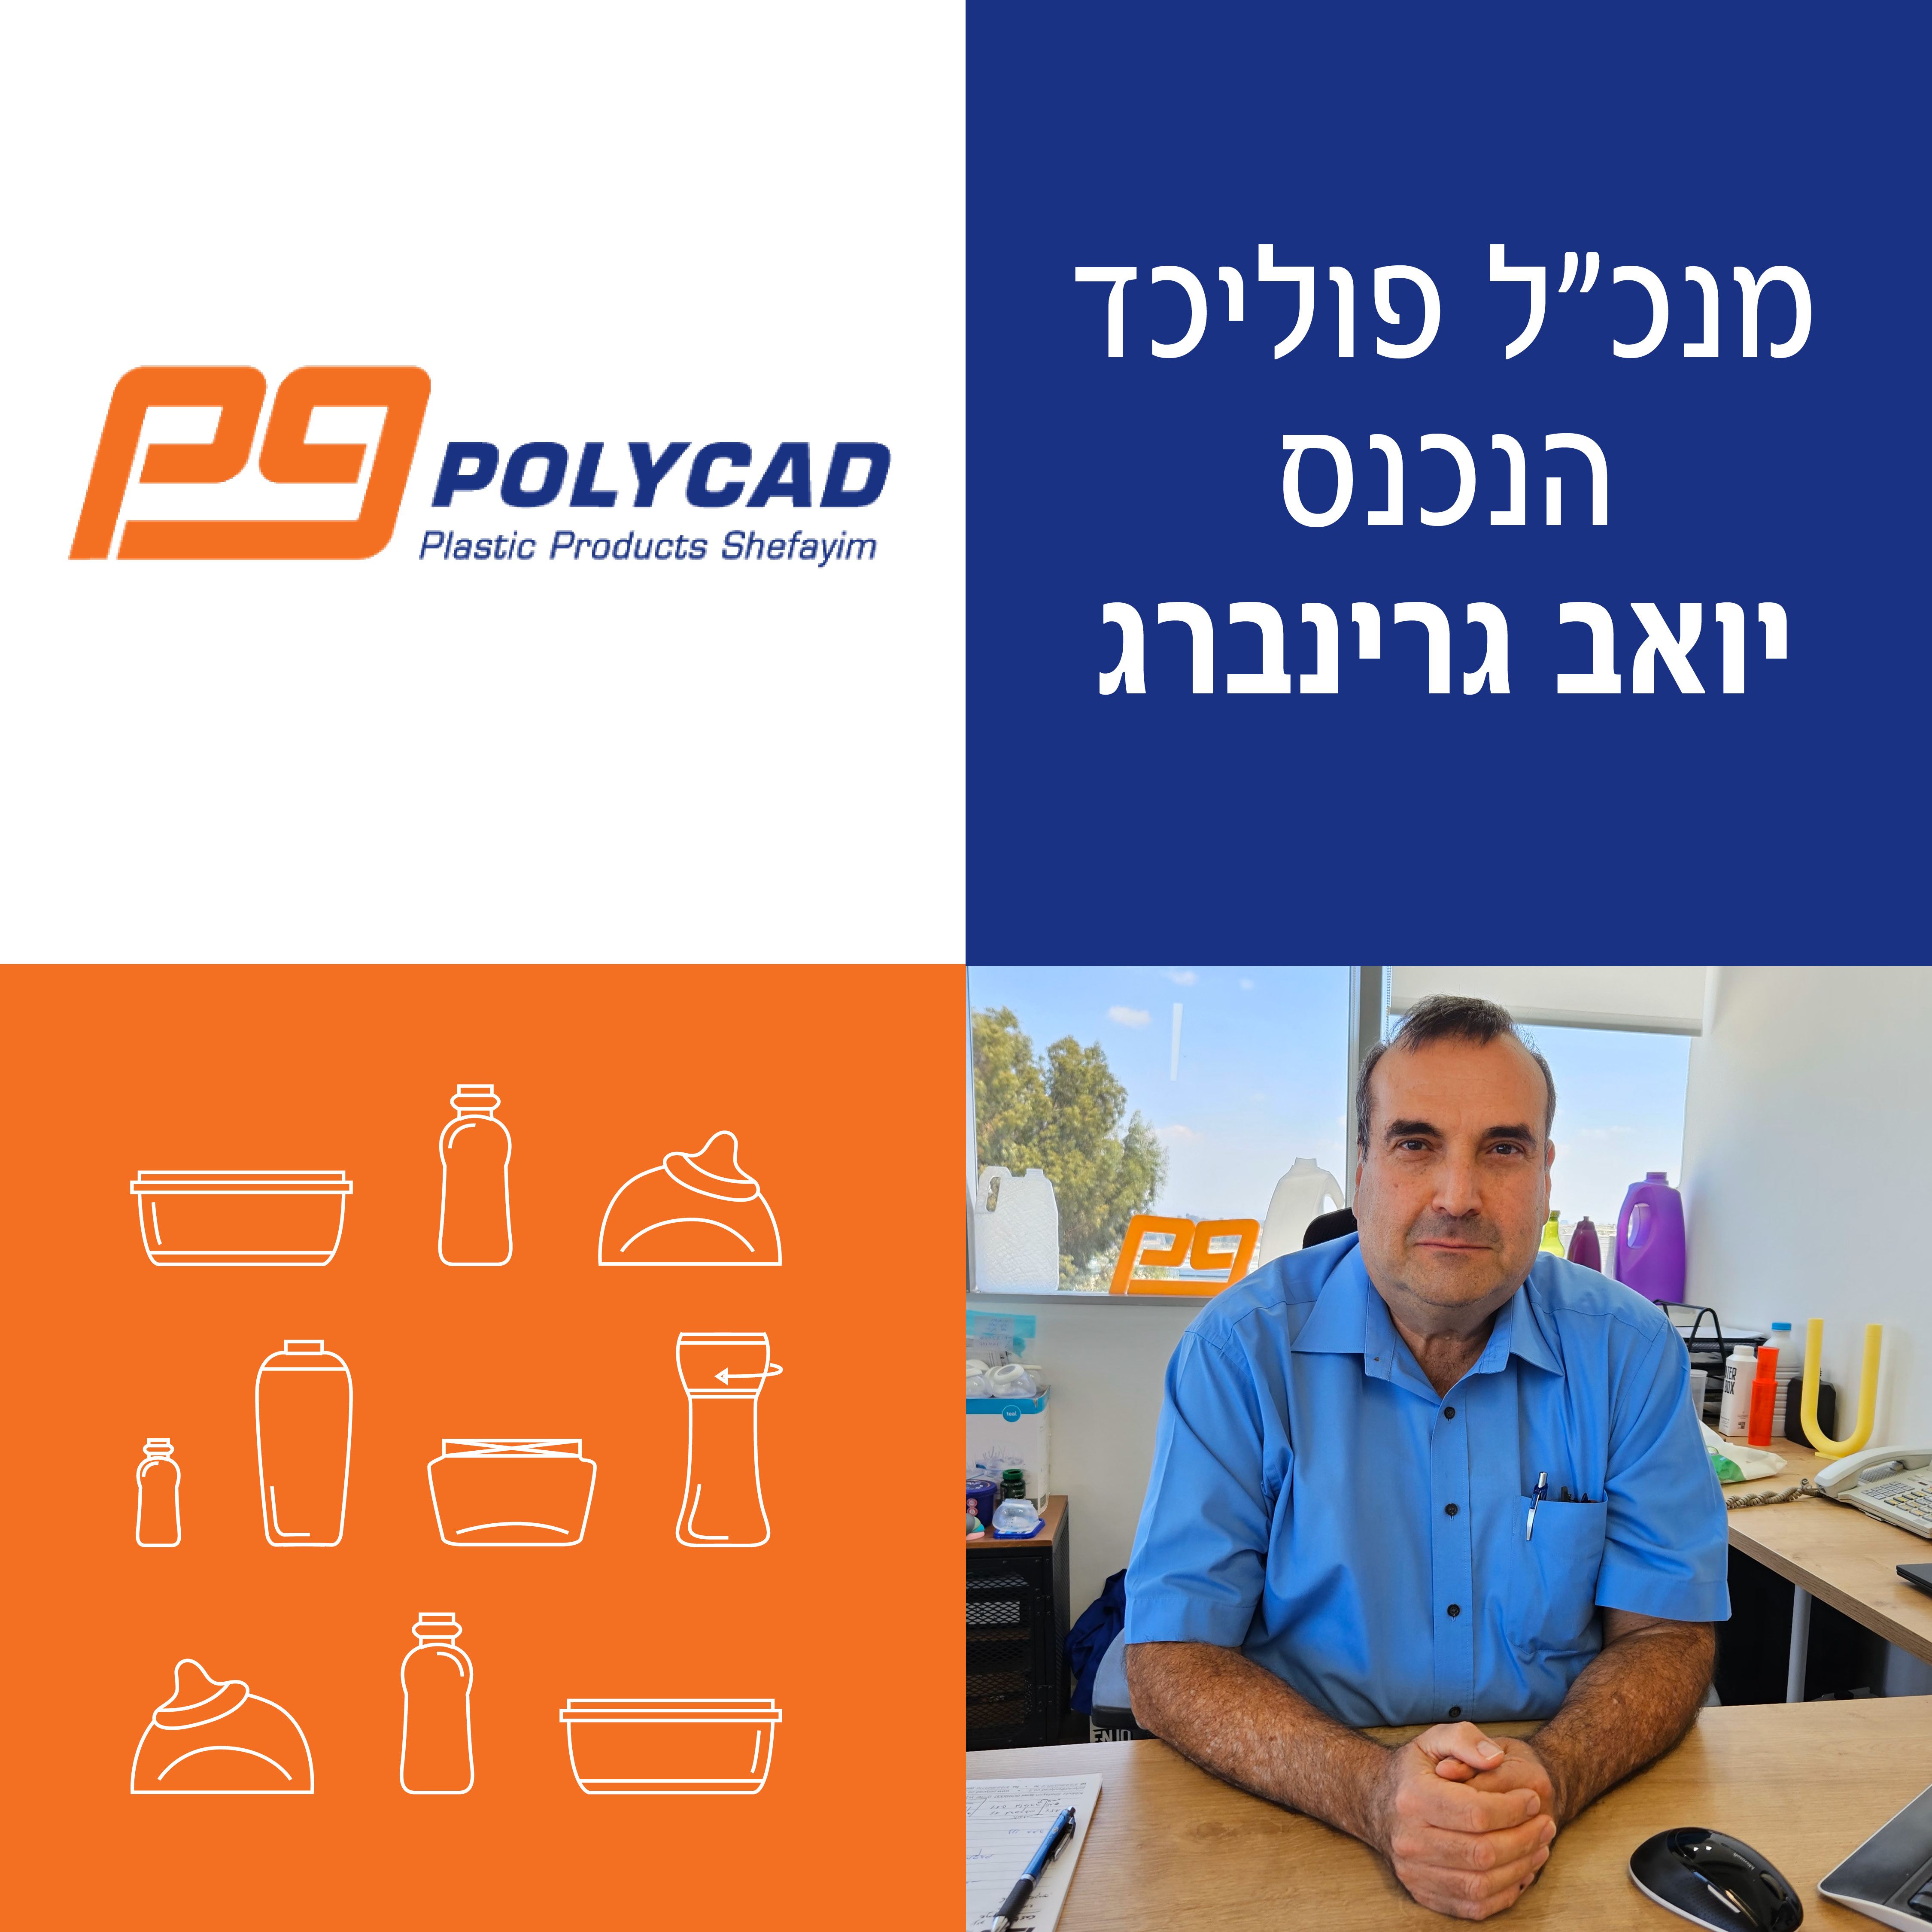 במהלך תקופה מאתגרת זו למשק הישראלי כולו, יואב גרינברג נכנס לתפקיד המנכ"ל החדש 